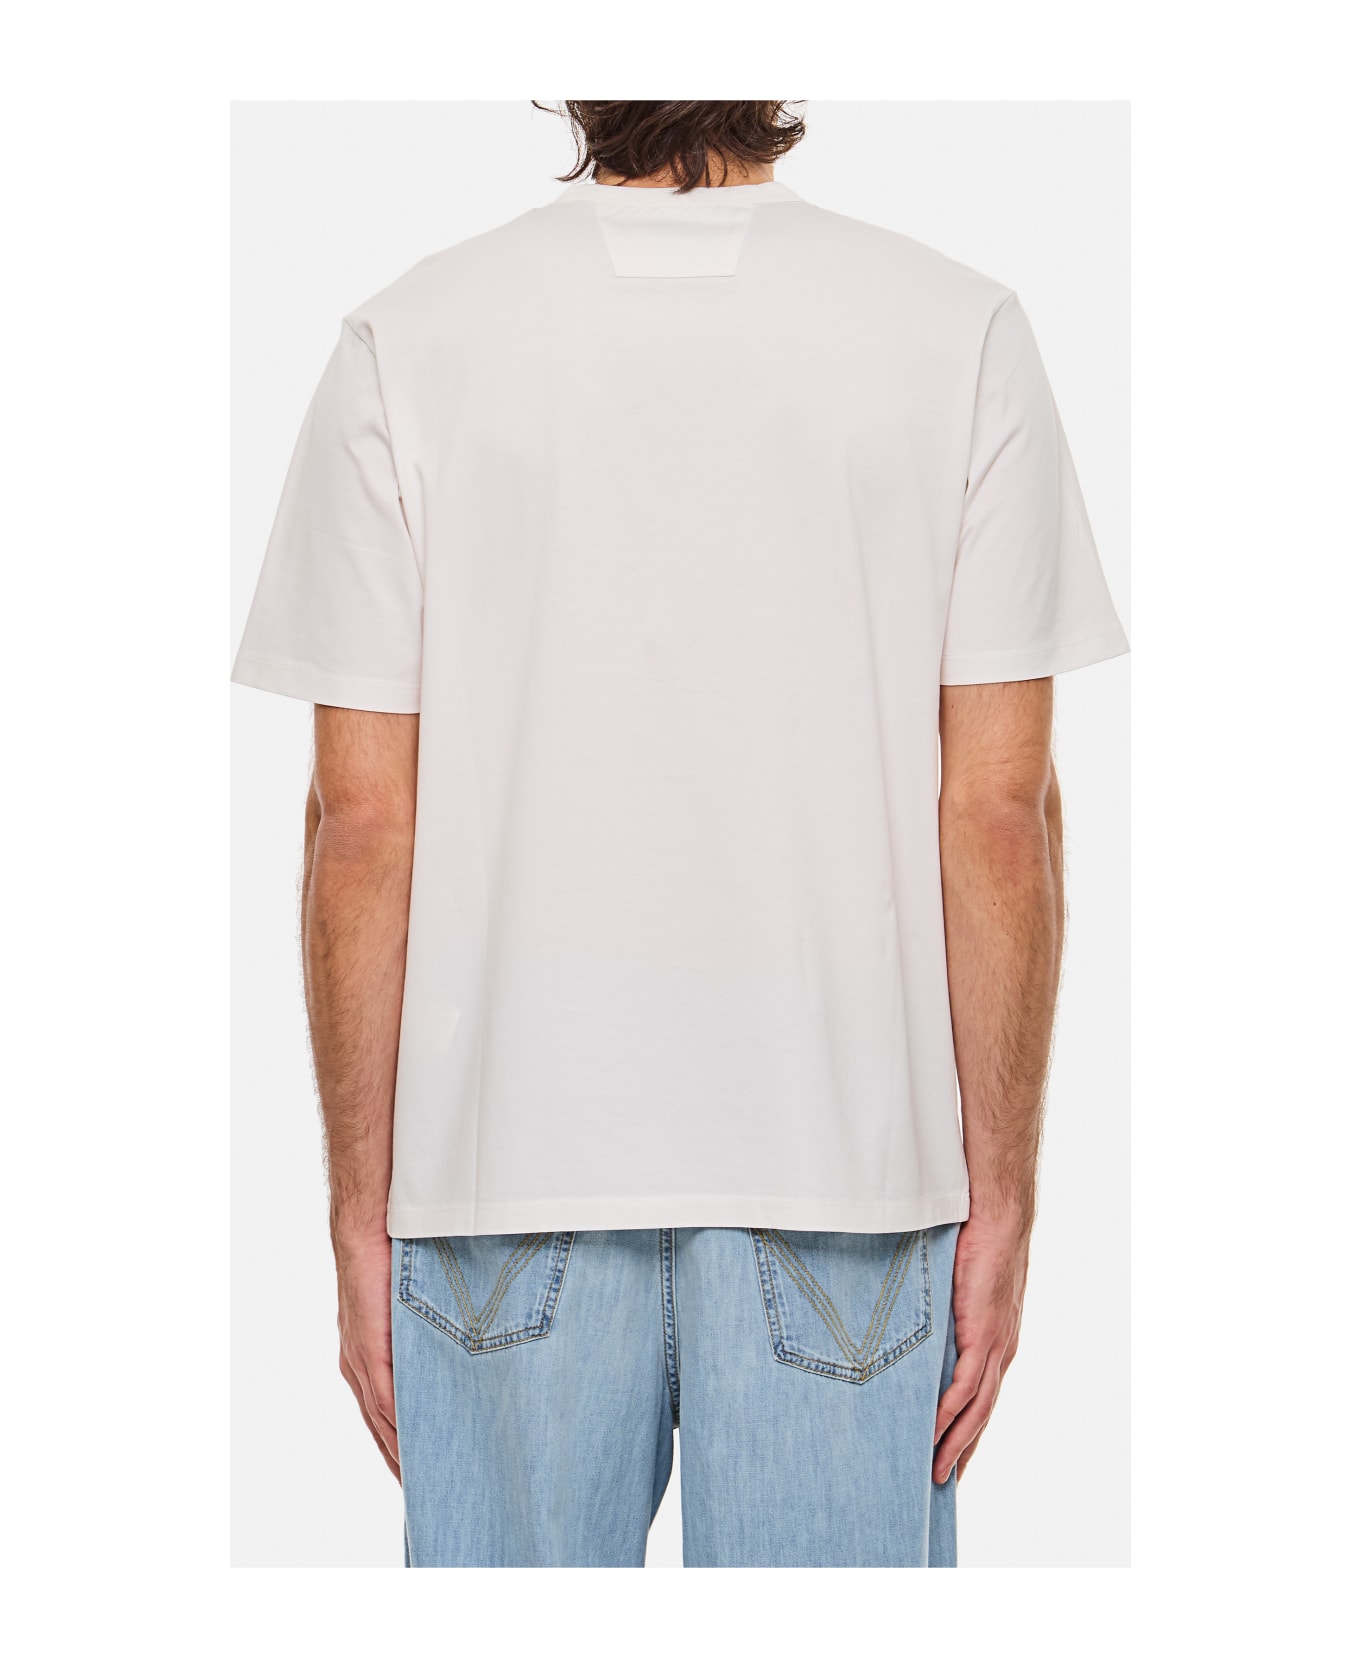 C.P. Company Metropolis Series Mercerized Jersey Logo Print T-shirt - White シャツ